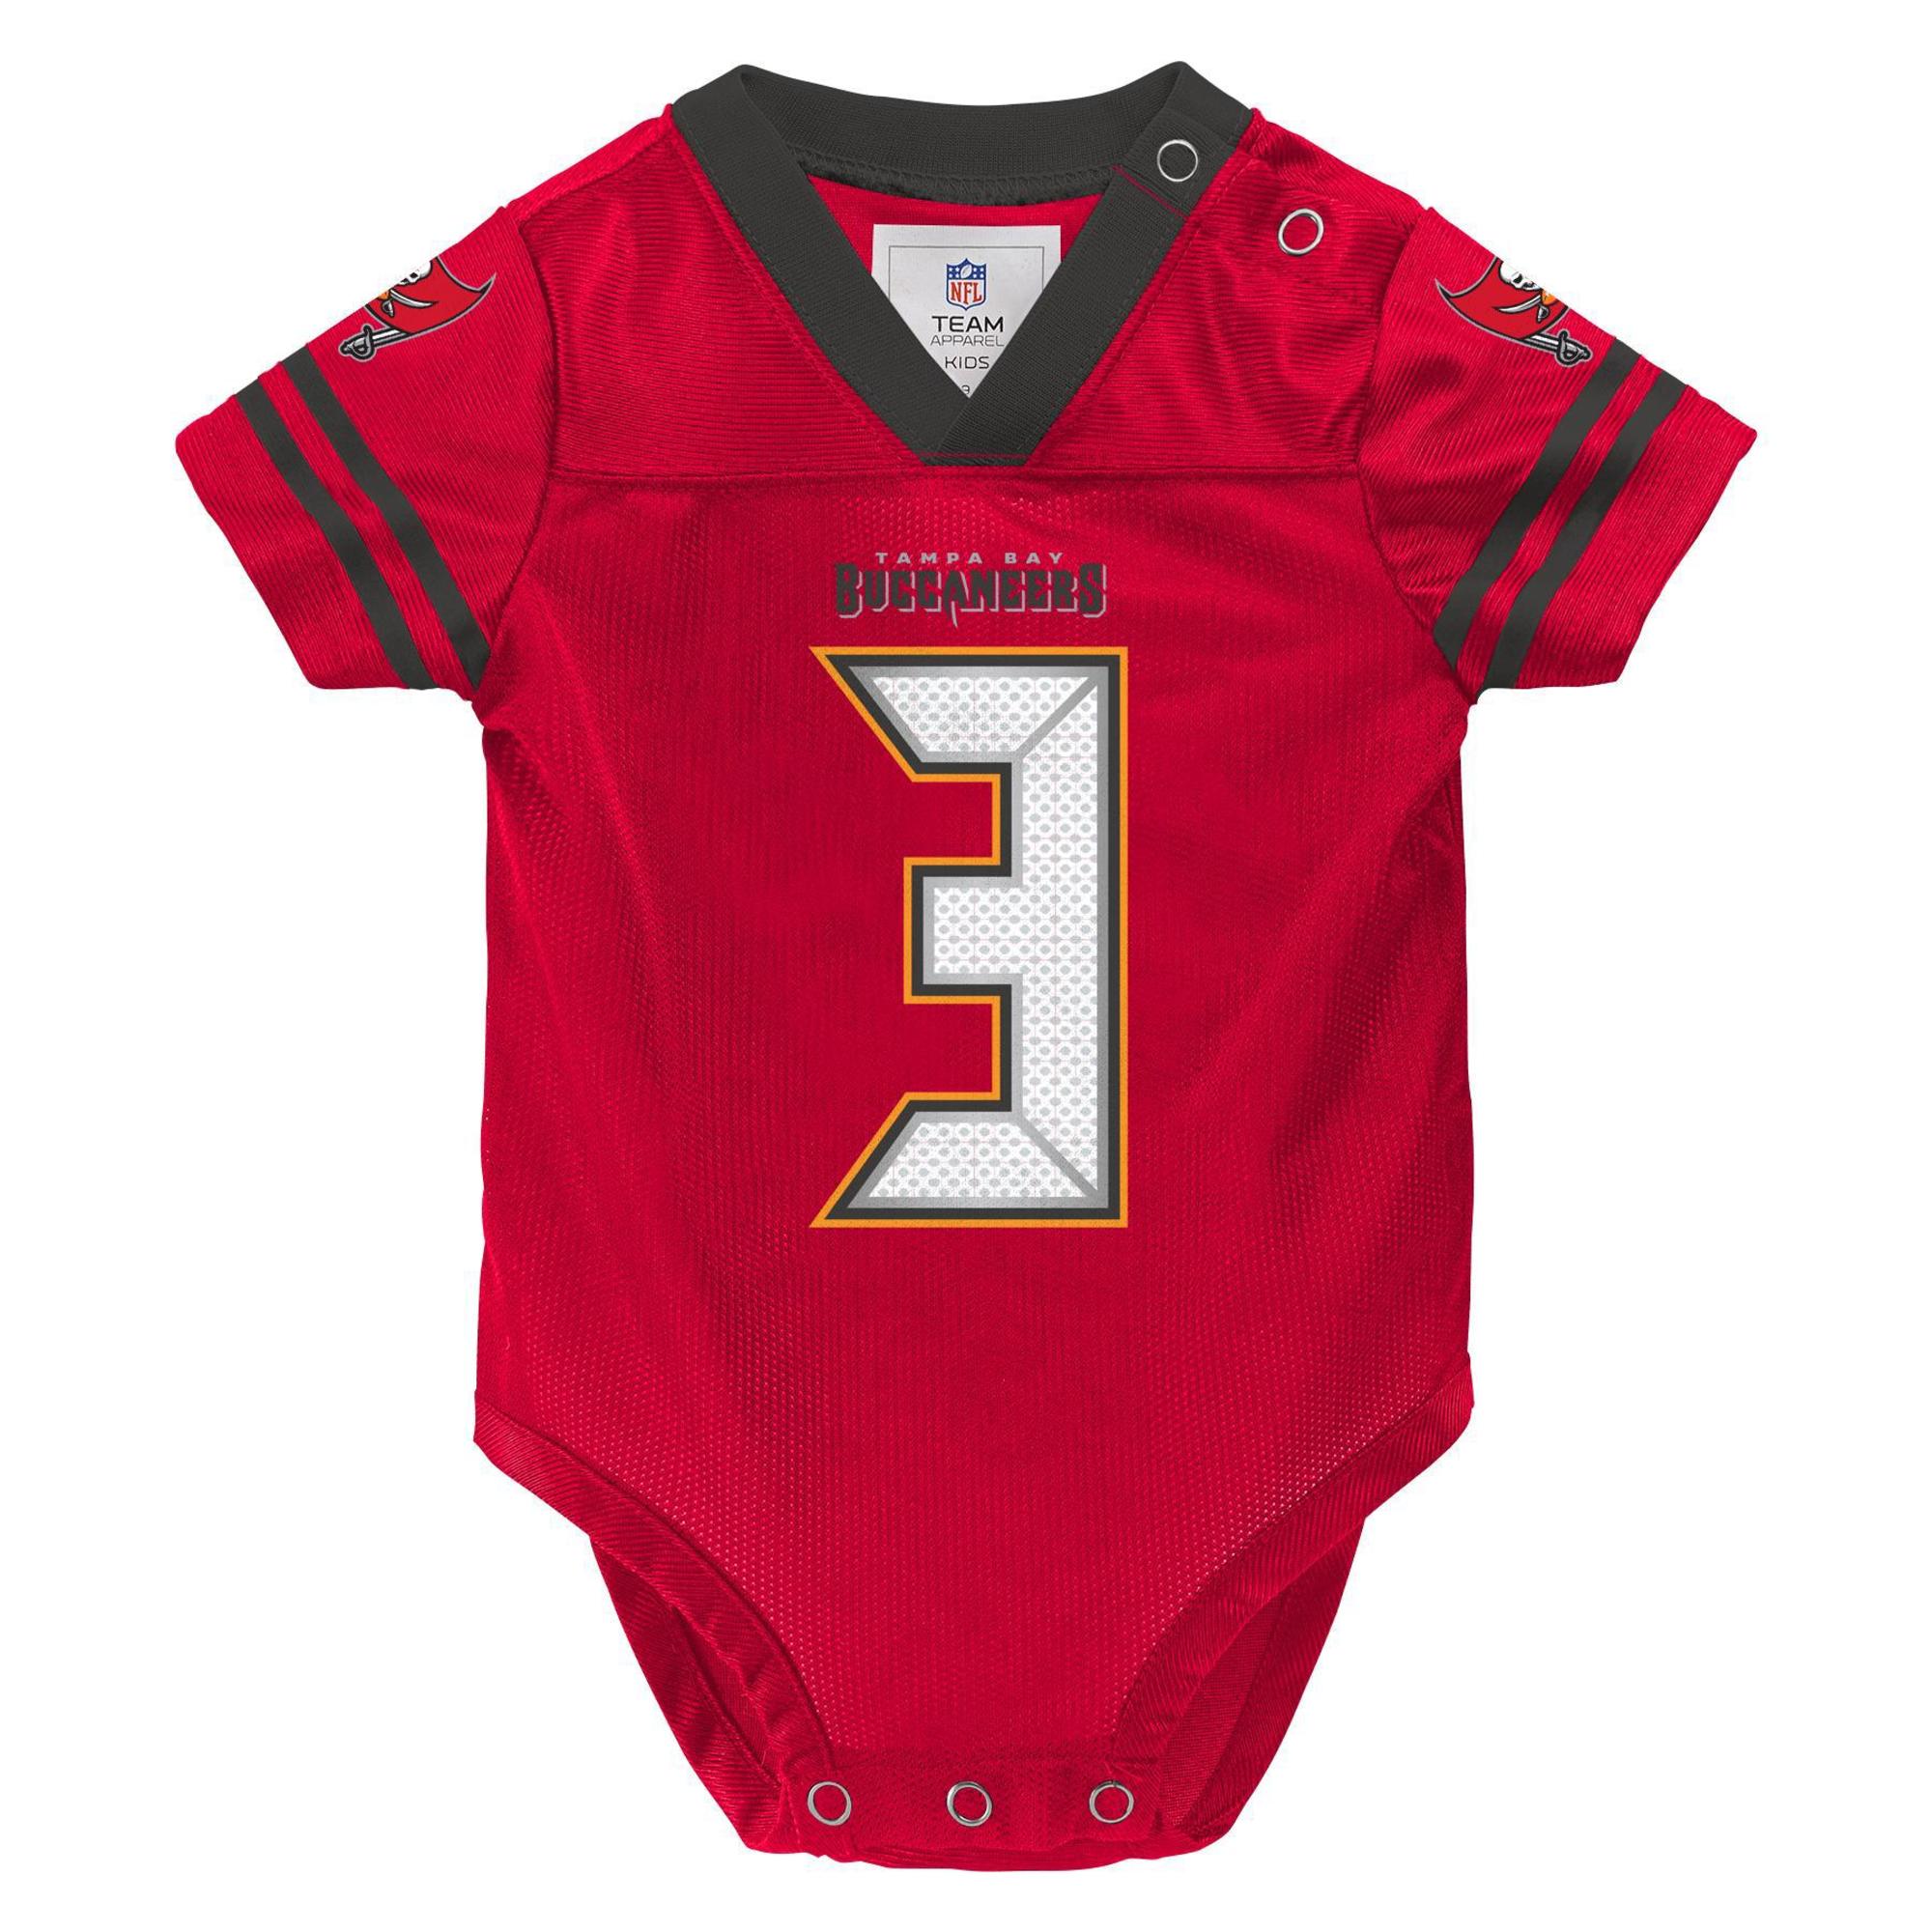 NFL Infants' Player Jersey Bodysuit - Tampa Bay Buccaneers Jameis Winston